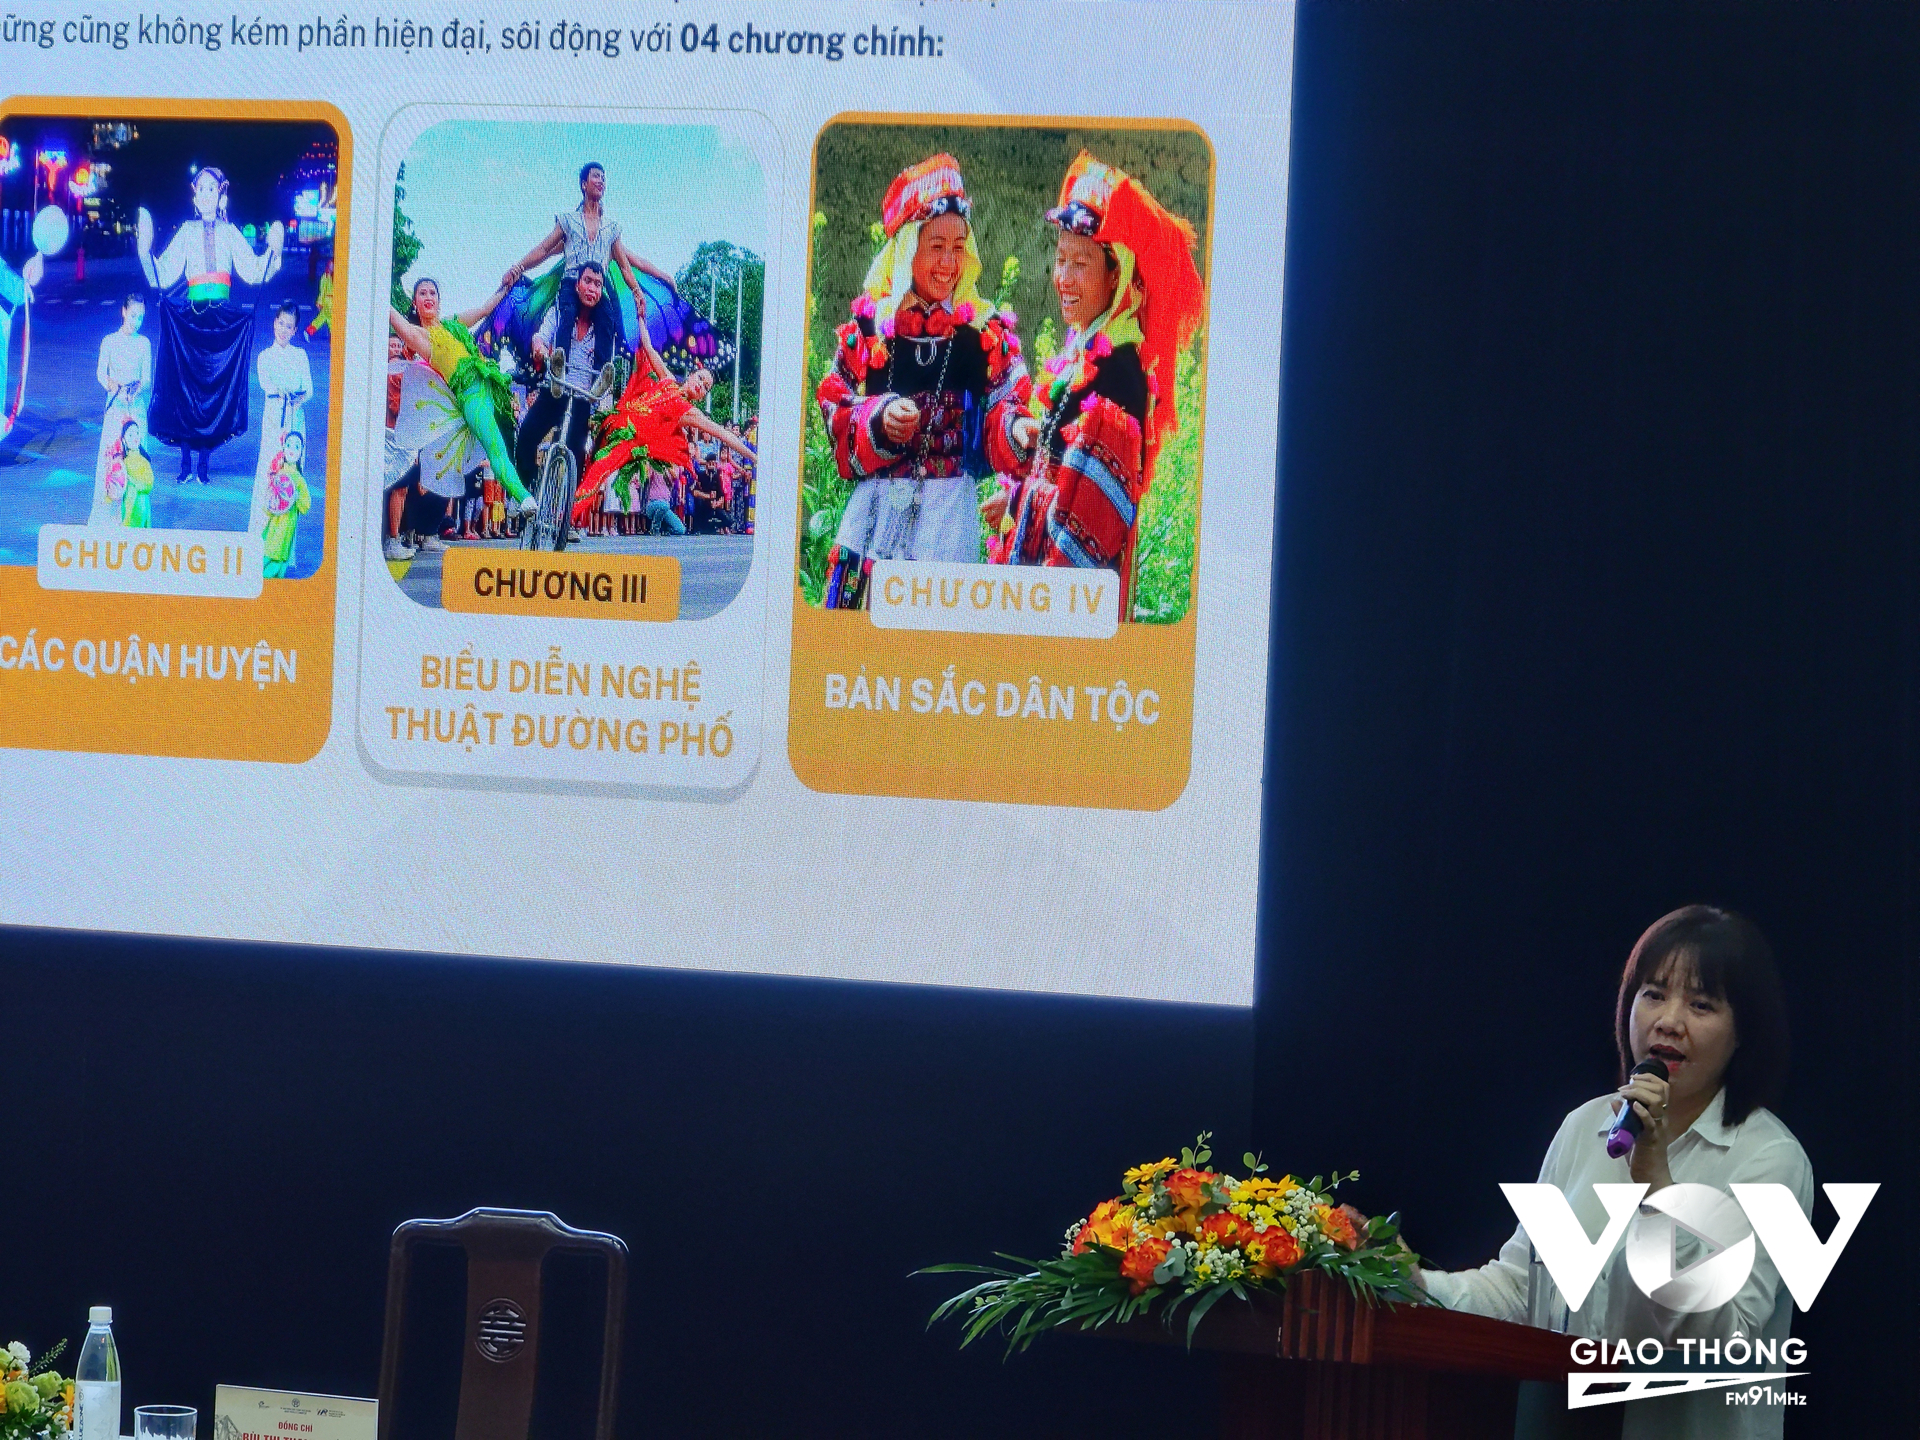 Bà Nguyễn Mai Anh, Phó GĐ Trung tâm xúc tiến đầu tư, thương mại, du lịch Hà Nội cho biết, Festival lần này sẽ tận dụng mùa thu để sáng tạo các sản phẩm du lịch hấp dẫn